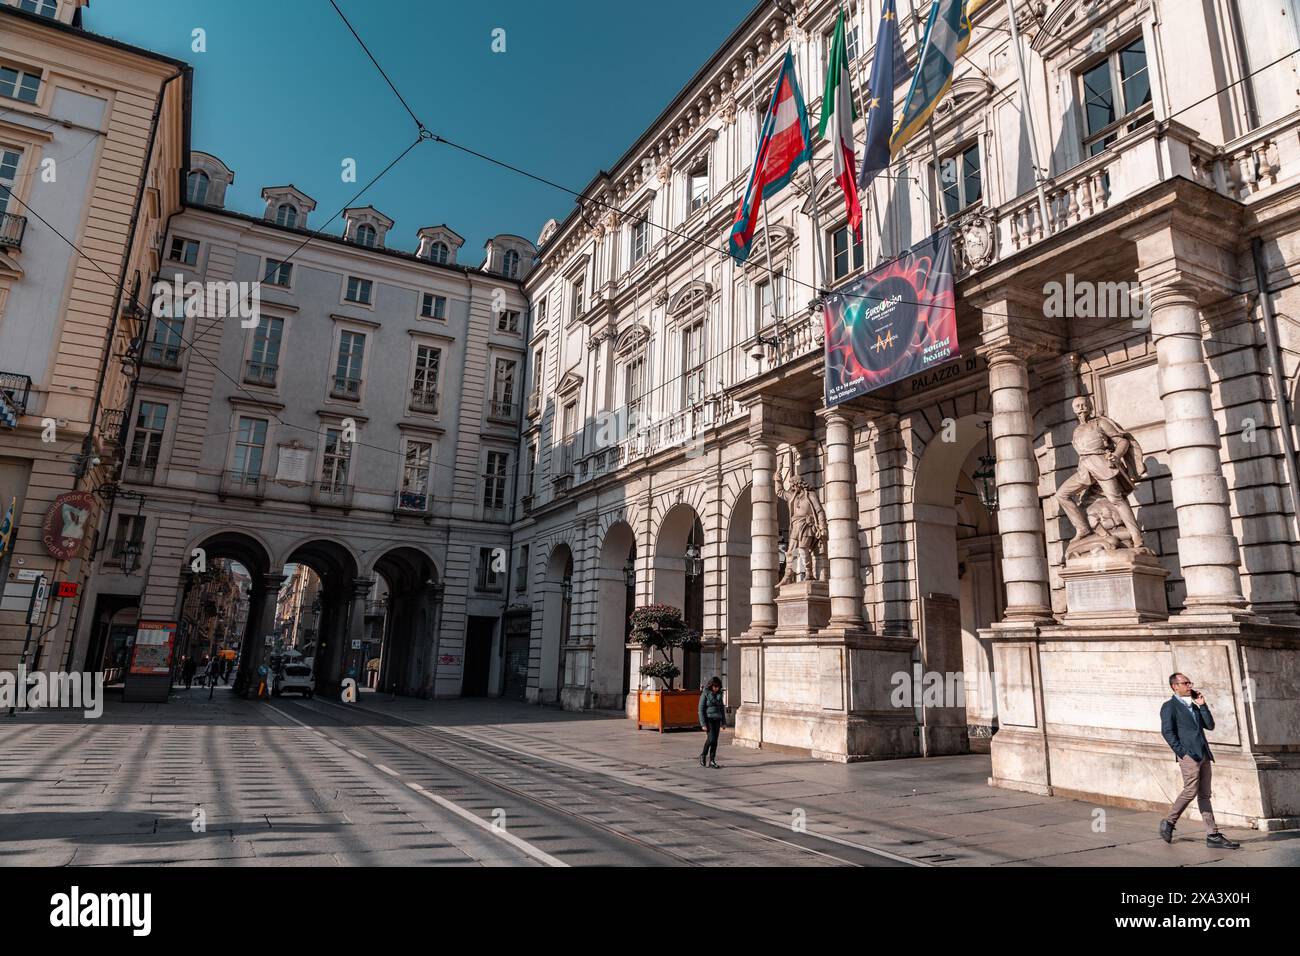 Turin, Italie - 28 mars 2022 : l'hôtel de ville de Turin sur la Piazza Palazzo di Citta, ville centrale de Turin, région du Piémont, nord de l'Italie. Banque D'Images